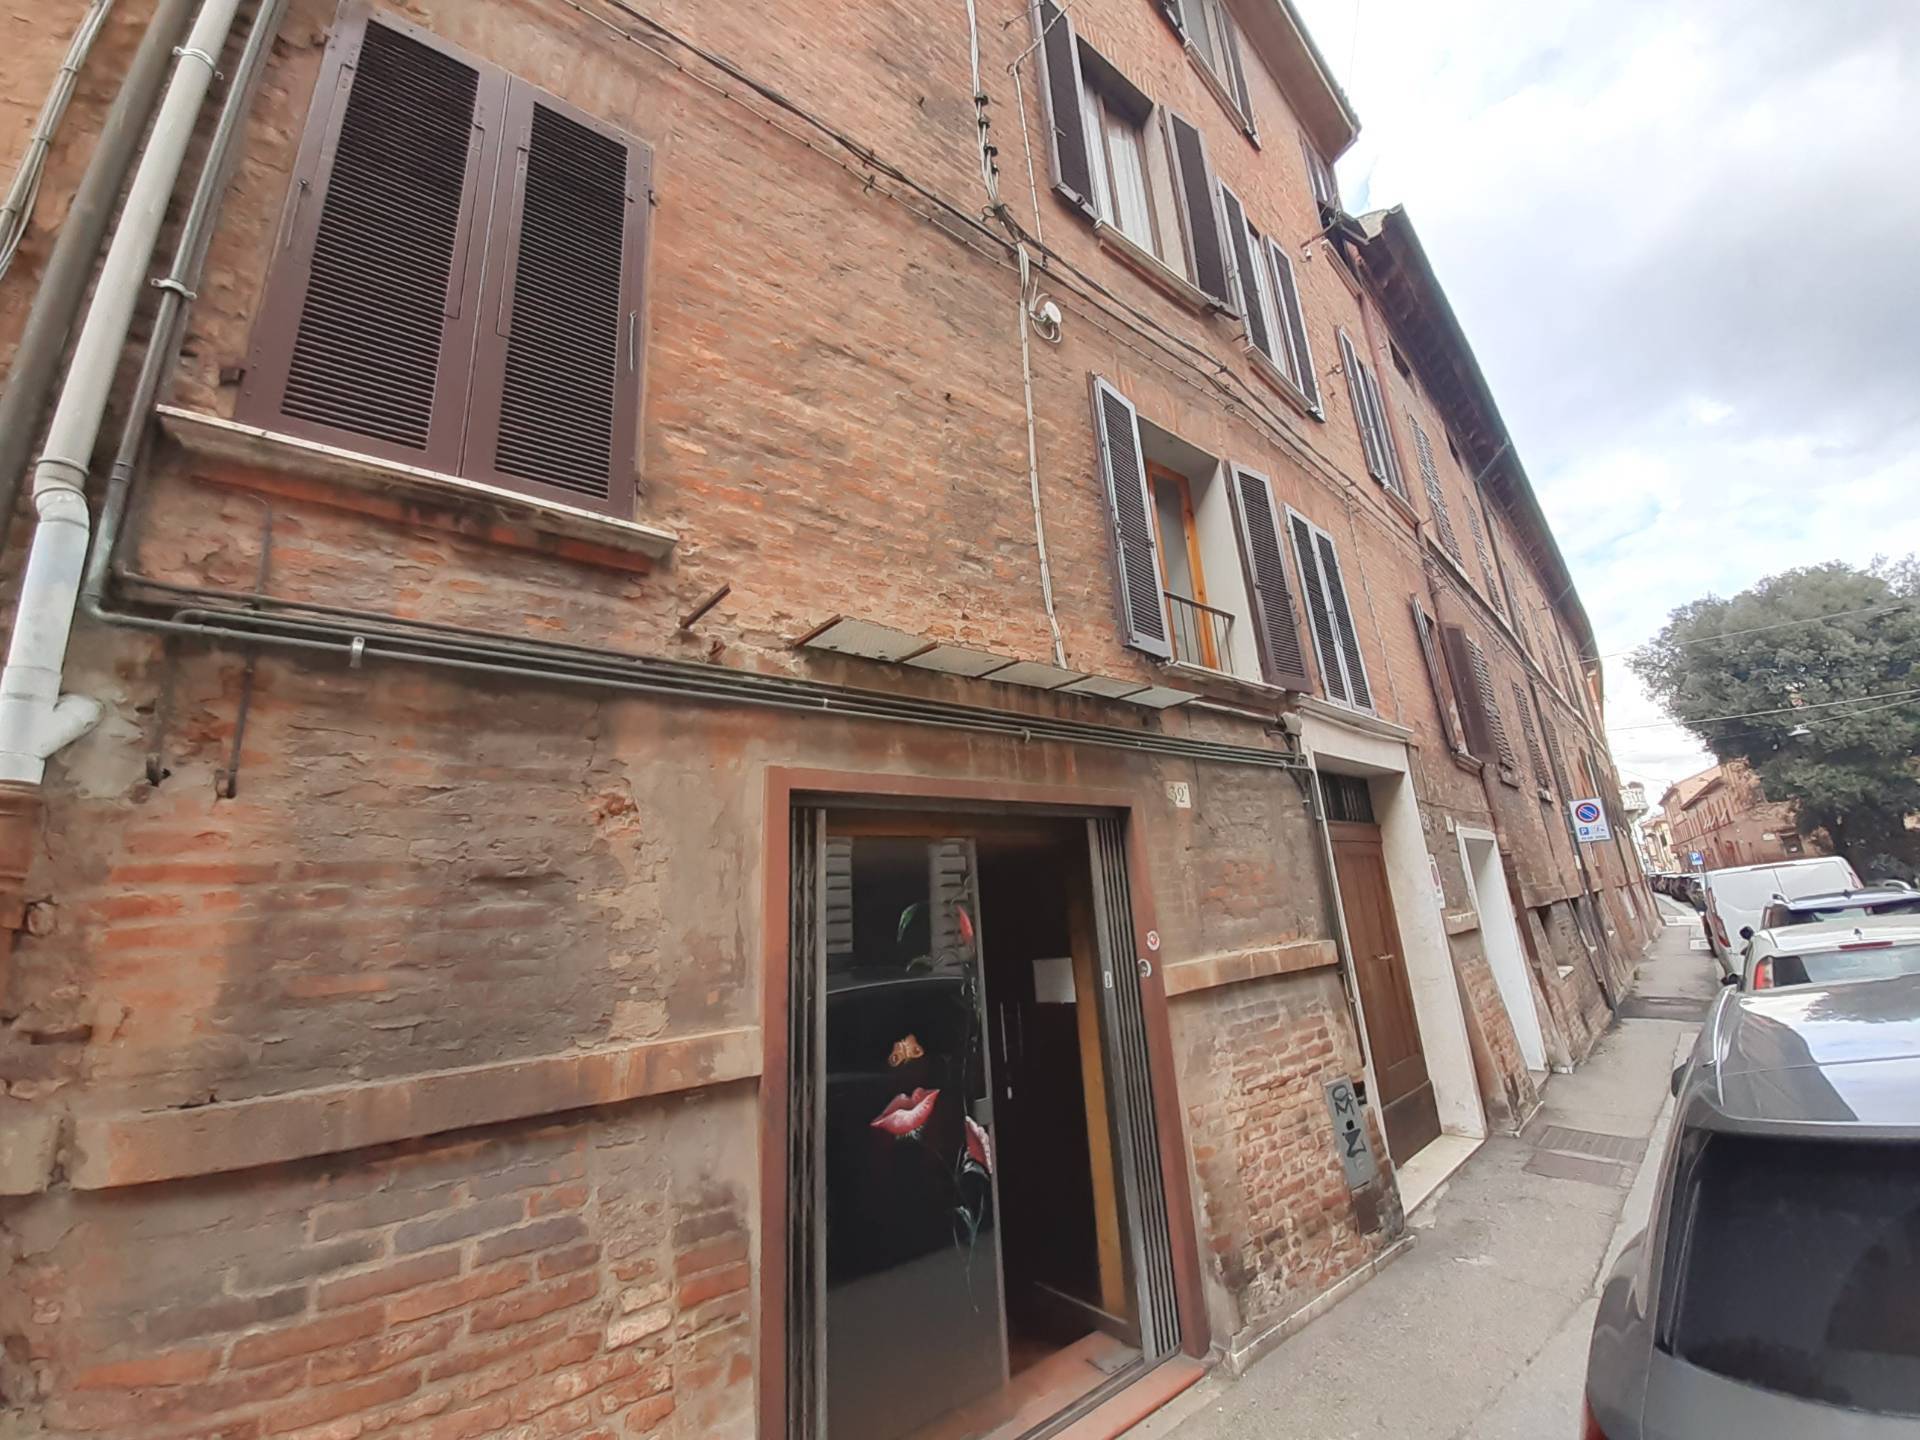 Locale commerciale in vendita, Ferrara centro storico